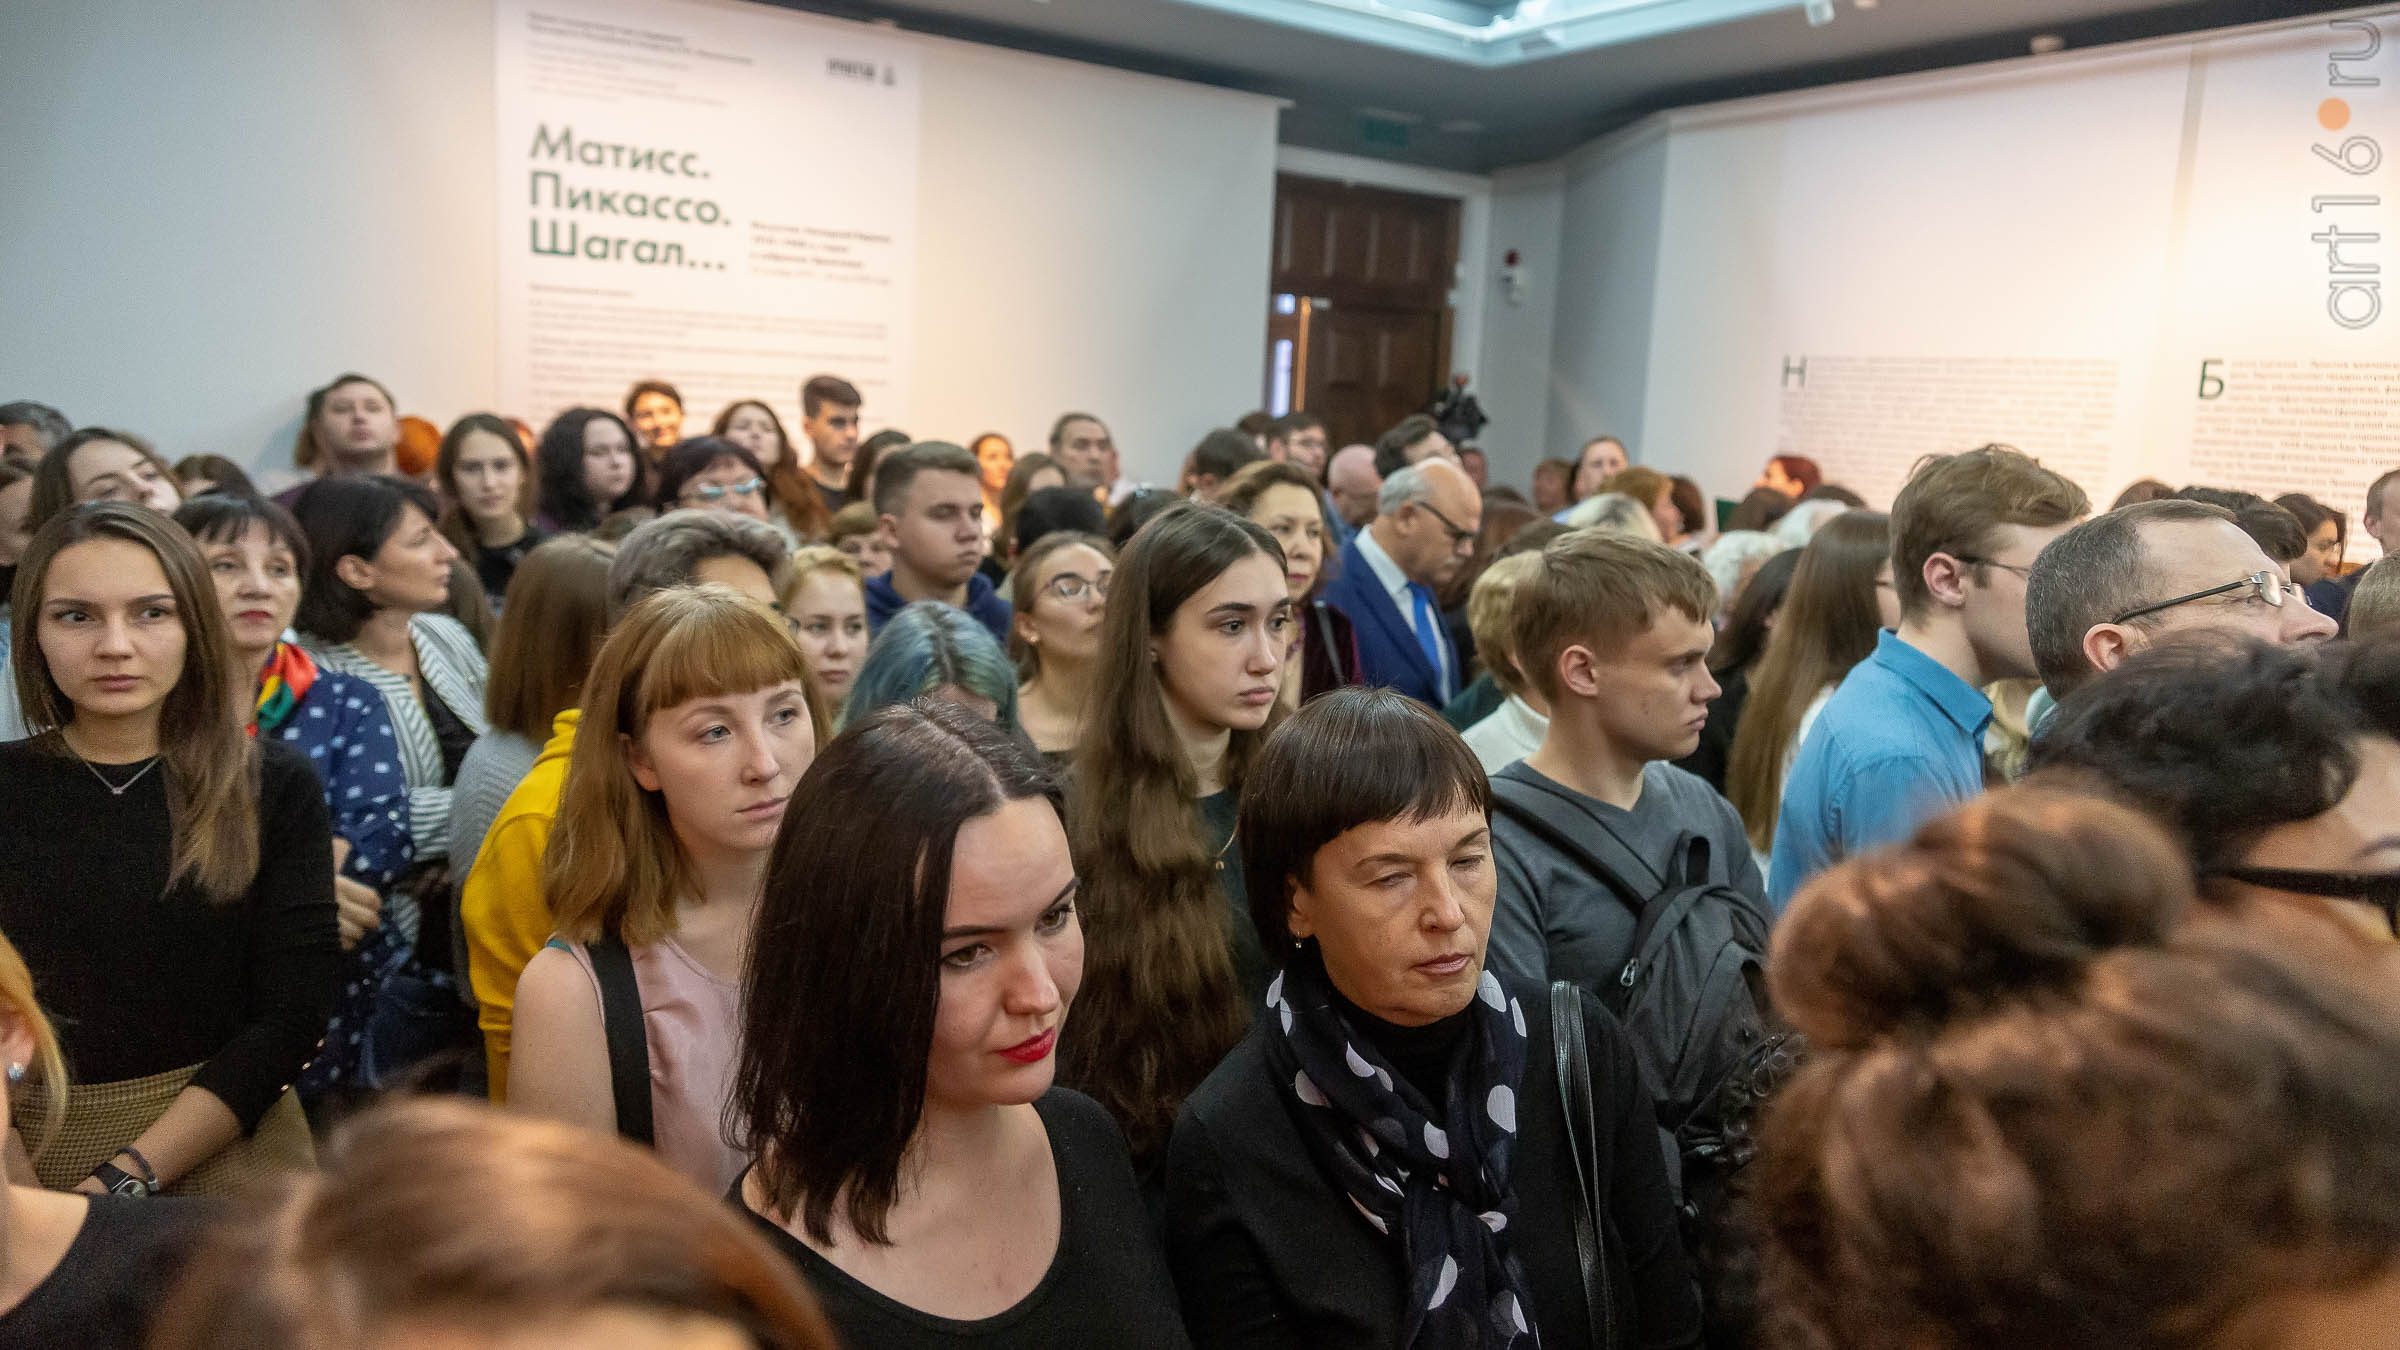 Пресс-конференция к открытию выставки «Матисс. Пикассо. Шагал...»::Матисс. Пикассо. Шагал...